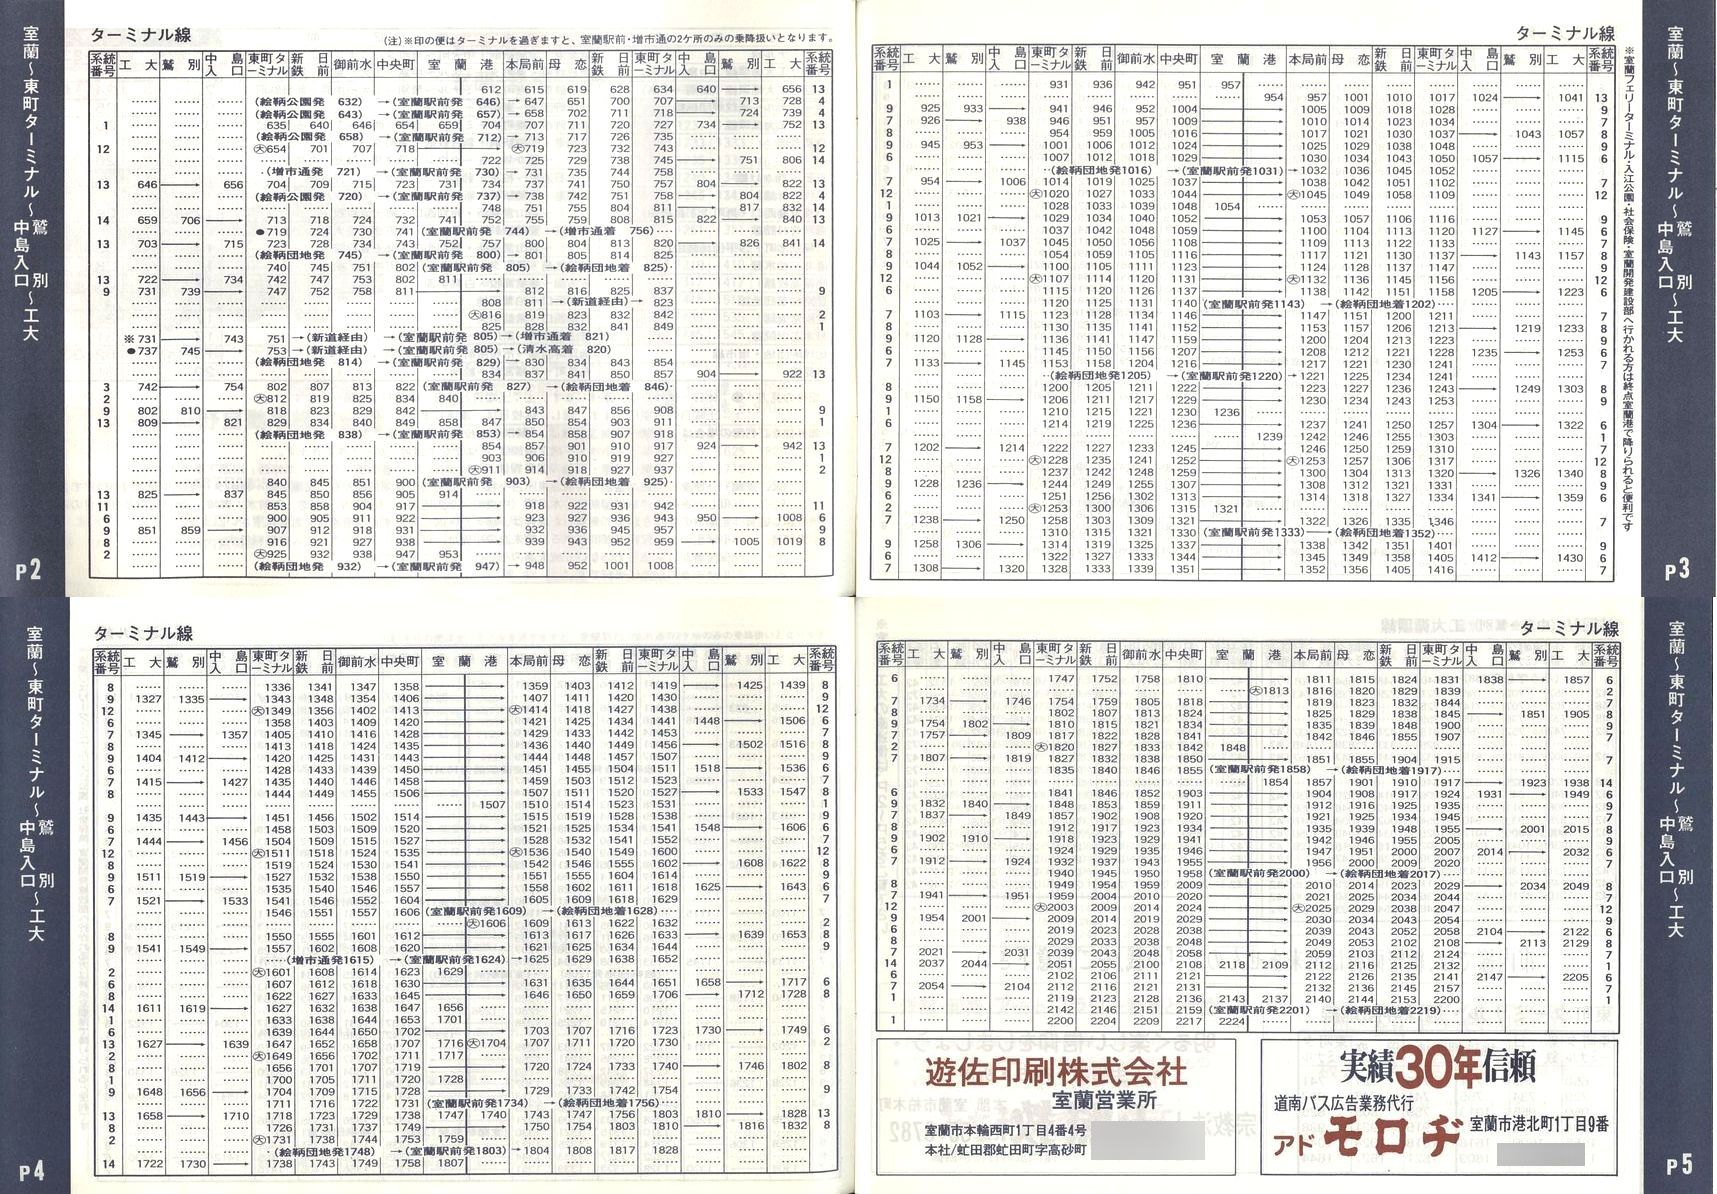 1989-04-01改正_道南バス_室蘭市内線冊子時刻表02-05